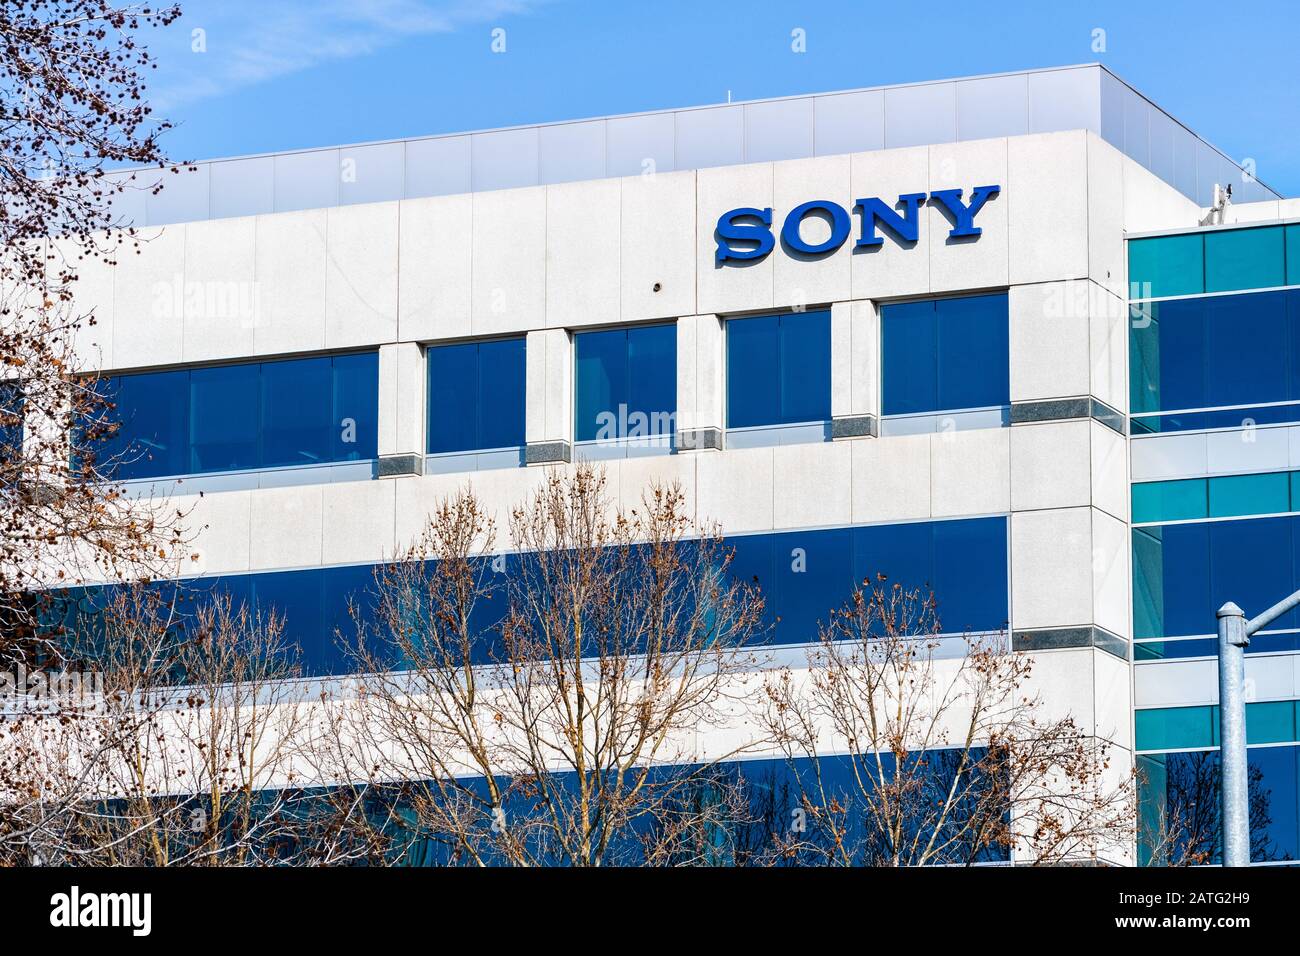 31 de enero de 2020 San Jose / CA / USA - Sony Electronics Inc oficinas en Silicon Valley; Sony Corporation es un conglomerado multinacional japonés corporati Foto de stock